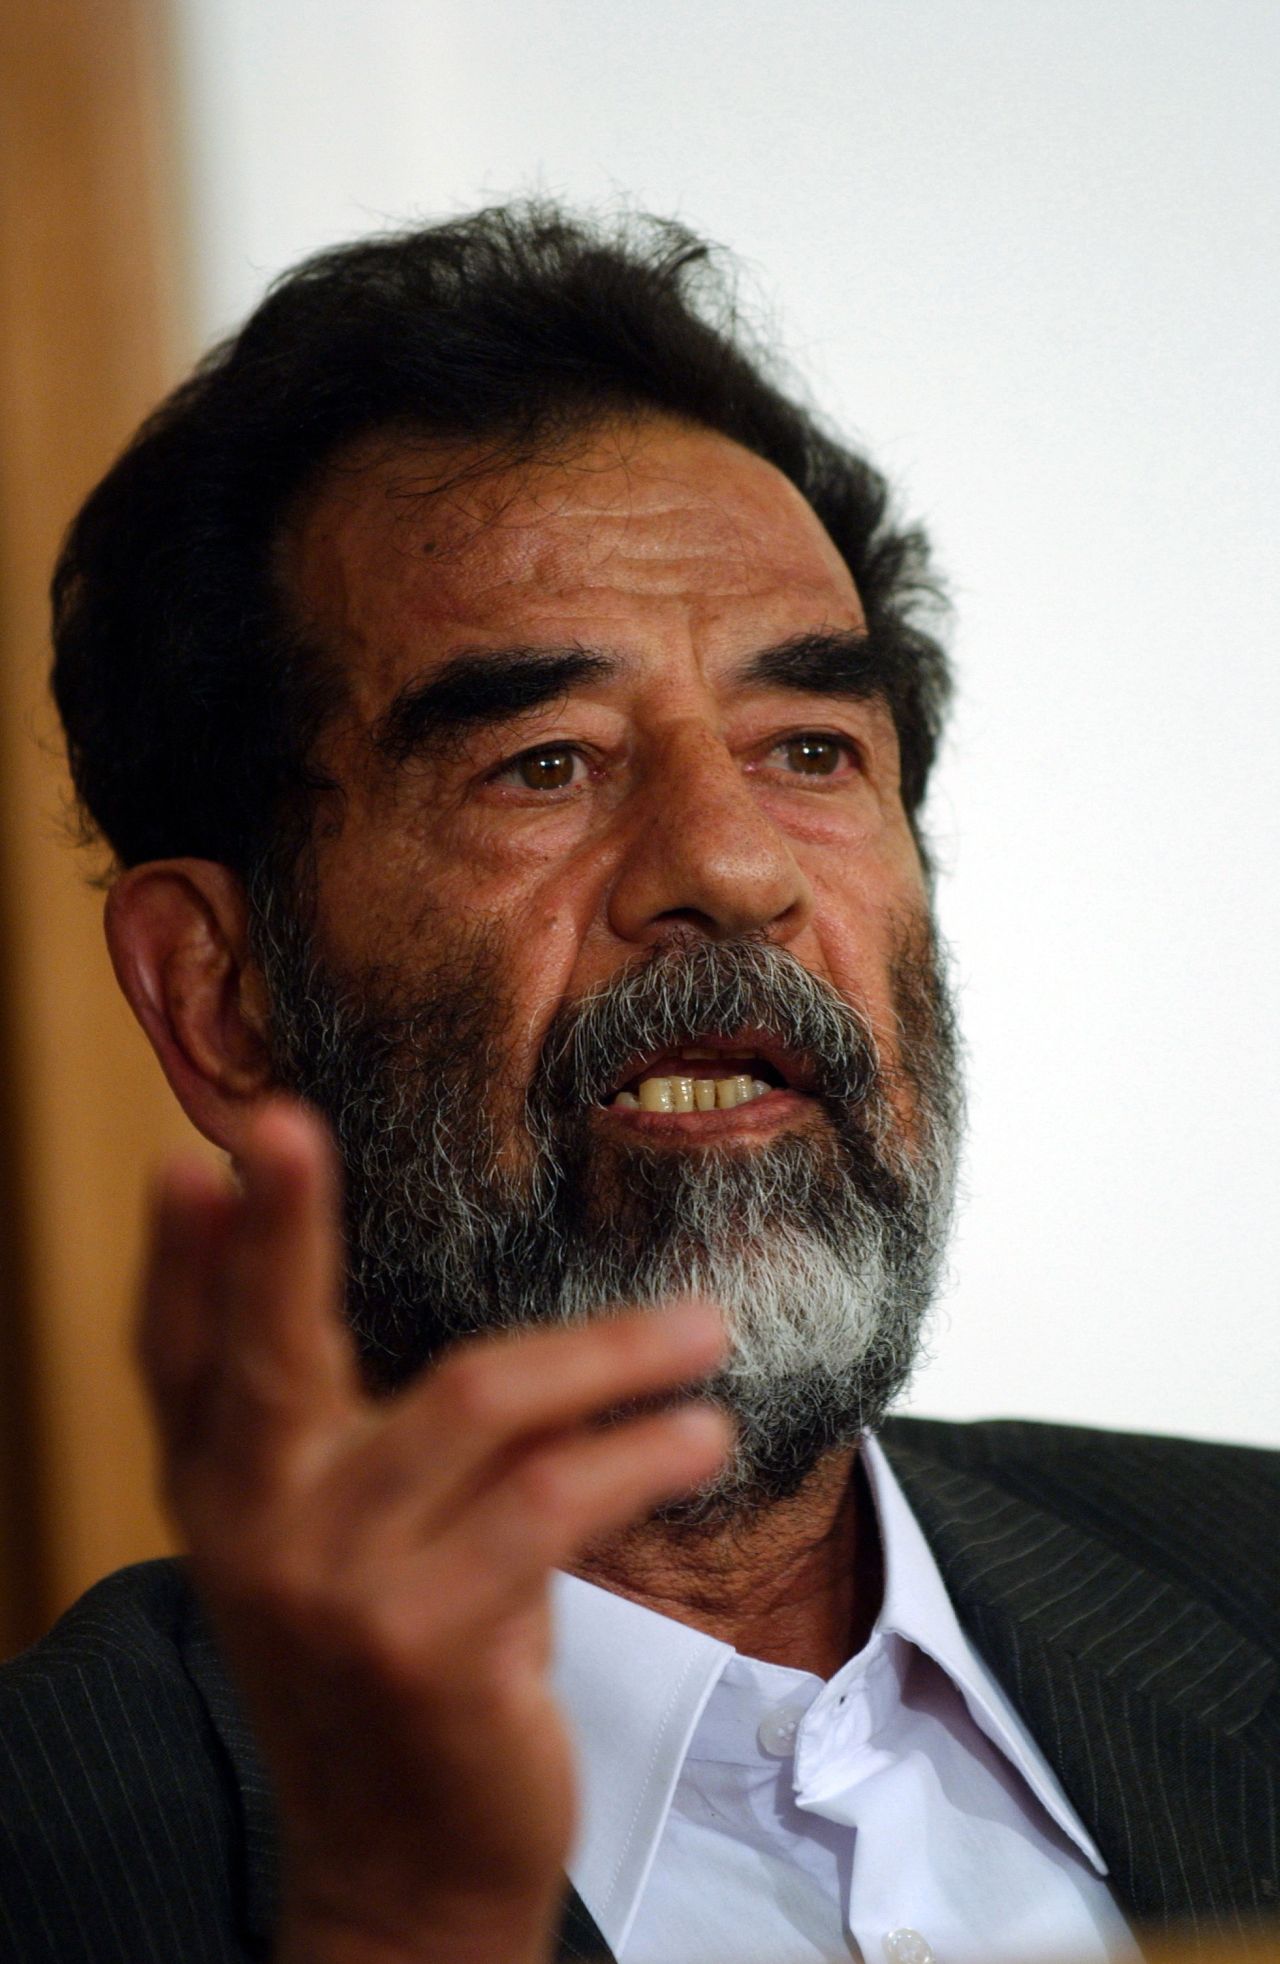 Porträtfotografie des ehemaligen Präsidenten des Irak, Saddam Hussein, bei seiner Stellungnahme während der ersten Anhörung vor dem Sondertribunal.